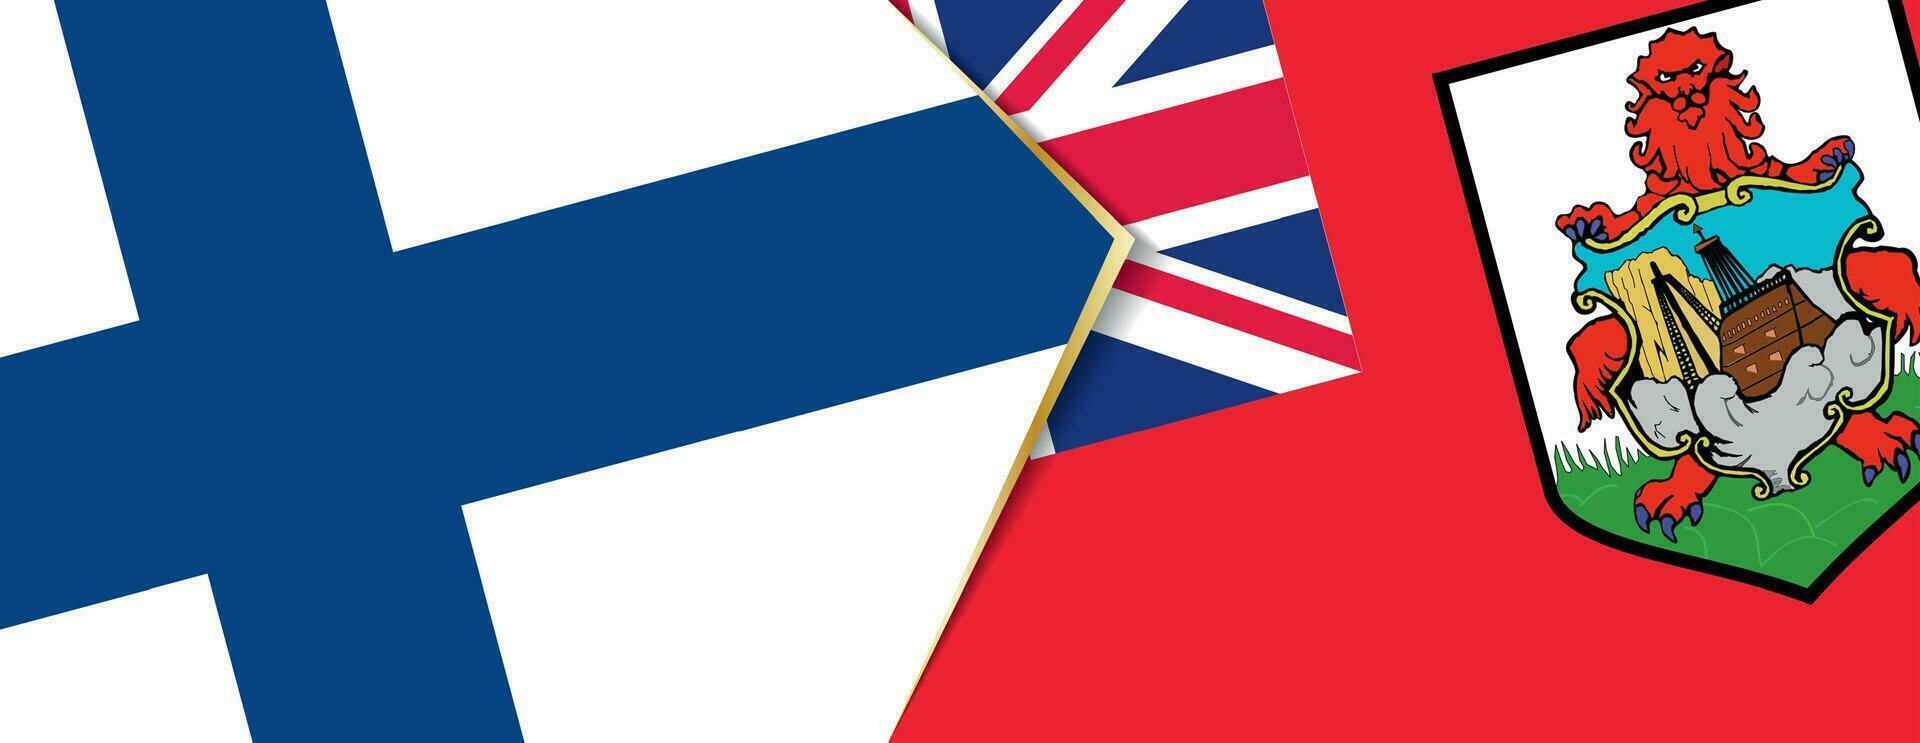 Finlandia e bermuda bandiere, Due vettore bandiere.